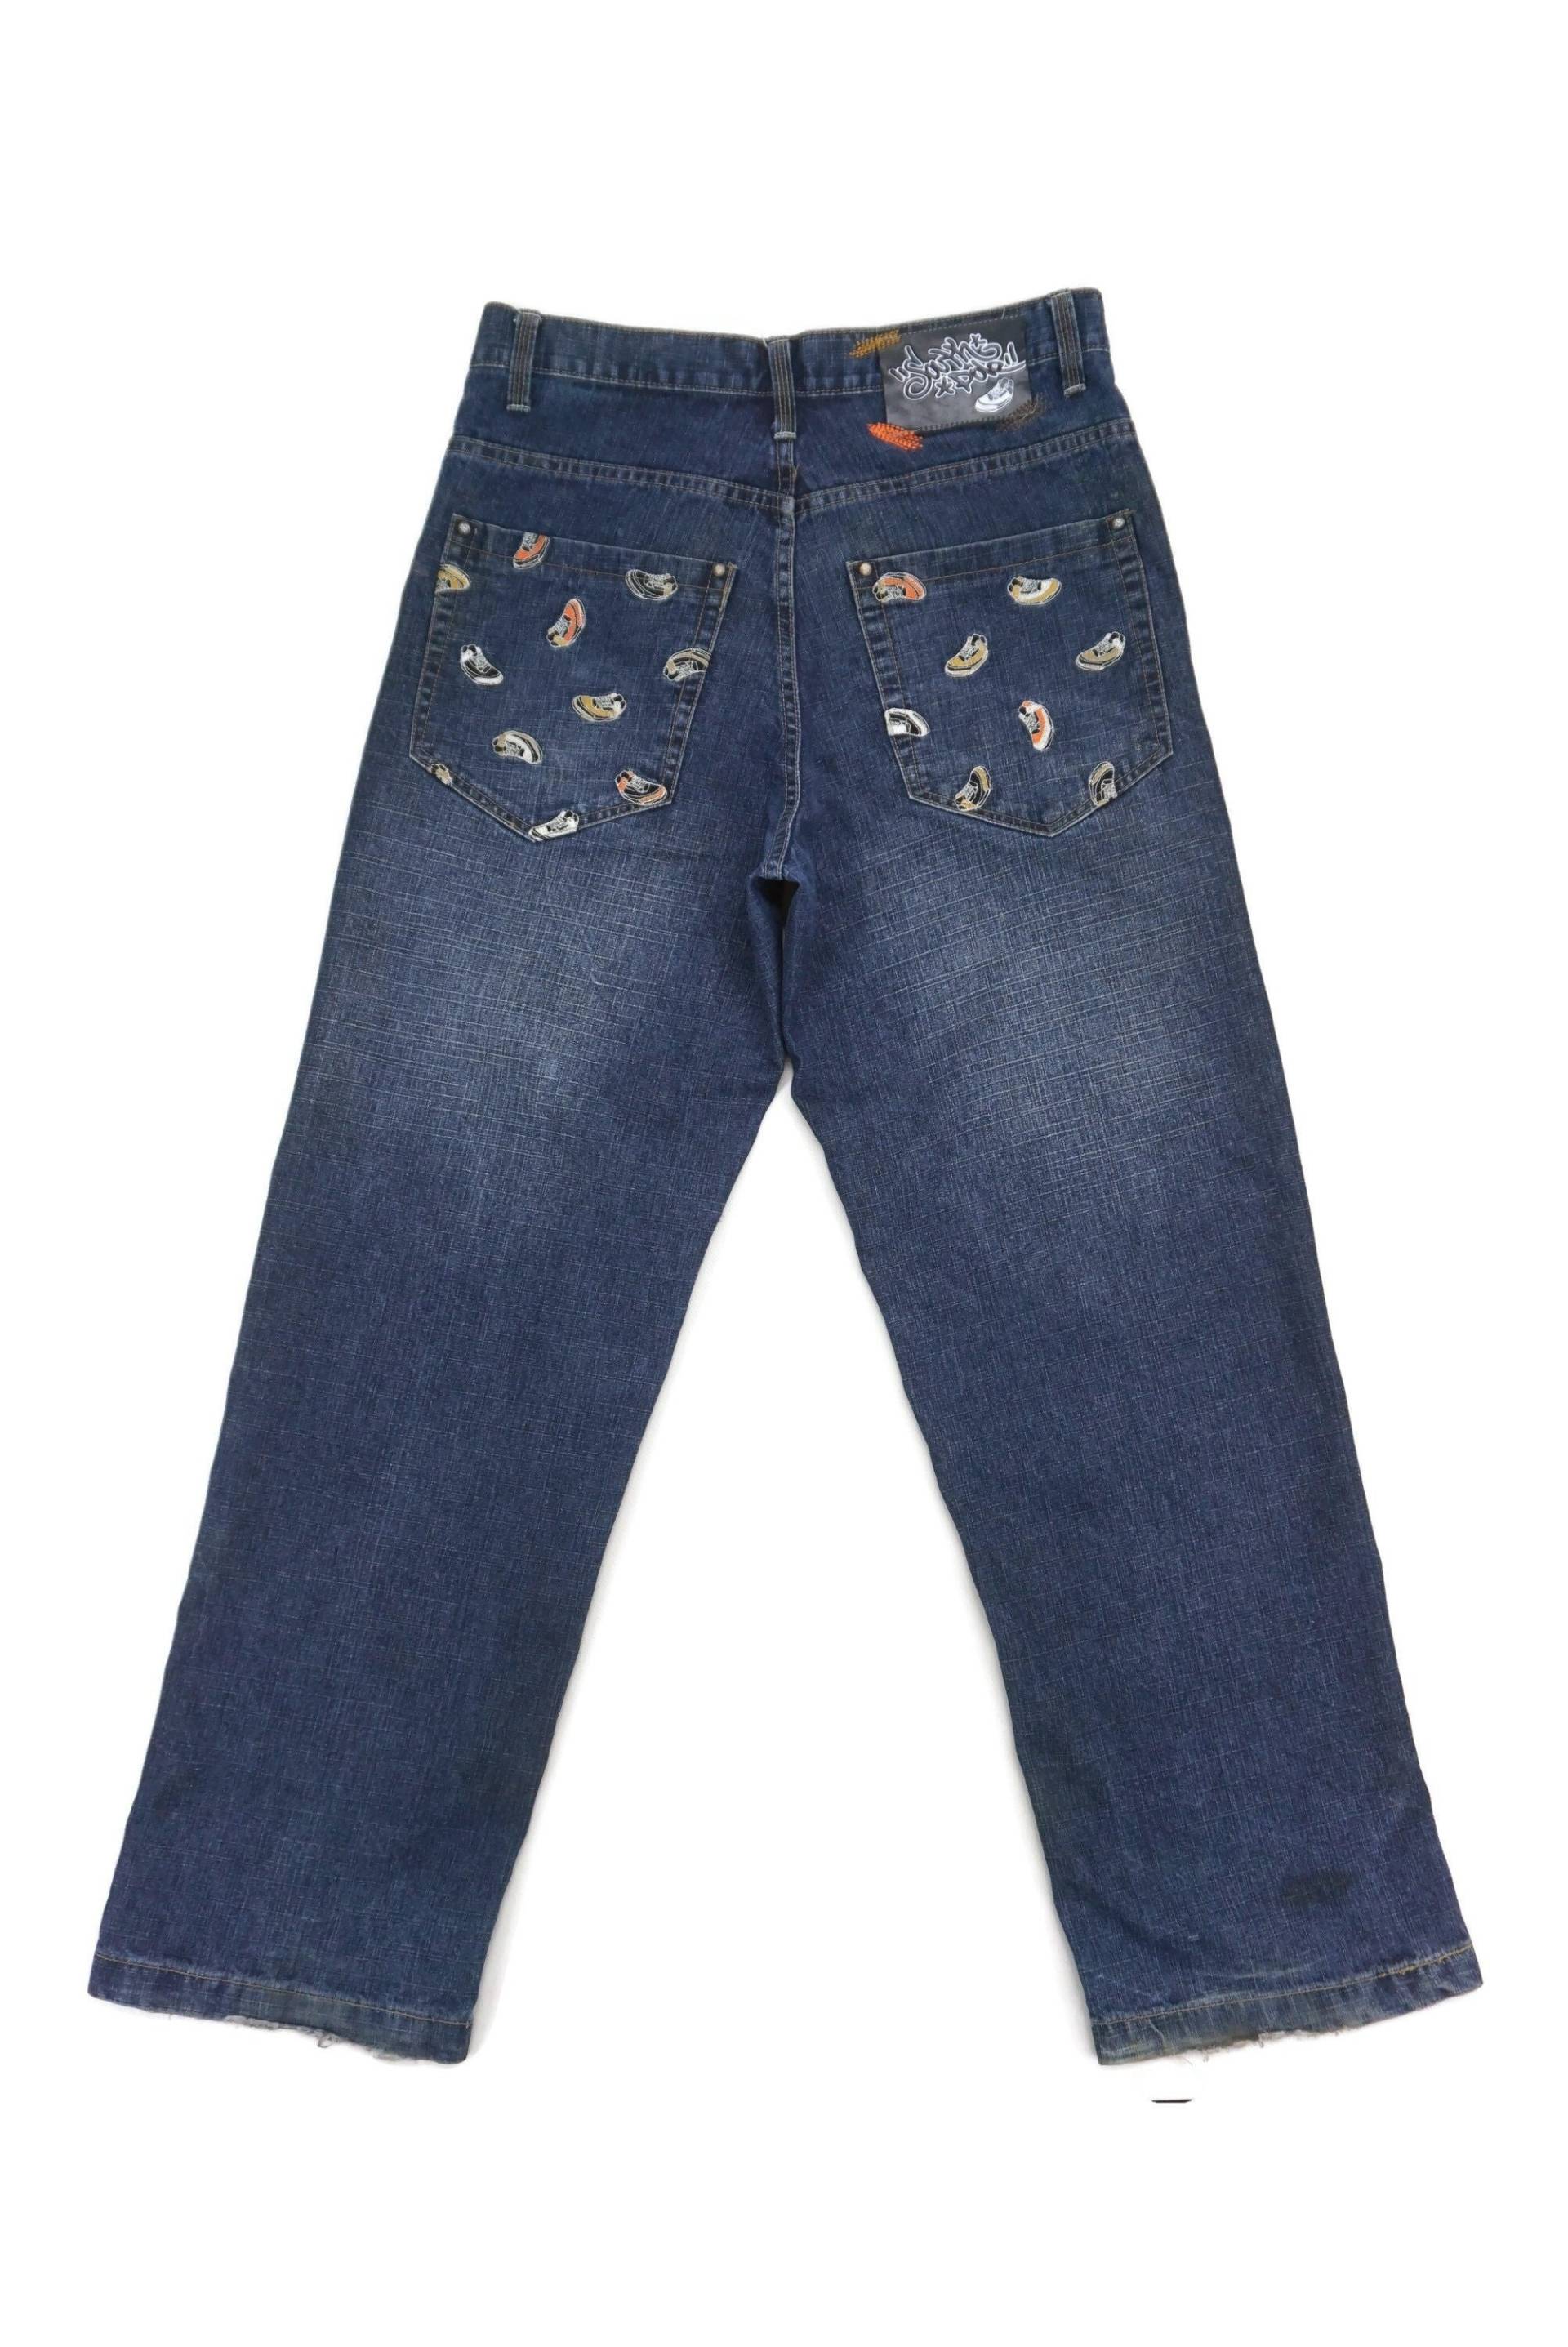 South Pole Jeans Größe 34 W35xl33, 5 Südpol Baggy Denim Verschönert Taschen Hip Hop Skateboards Hose von TinCityVintage